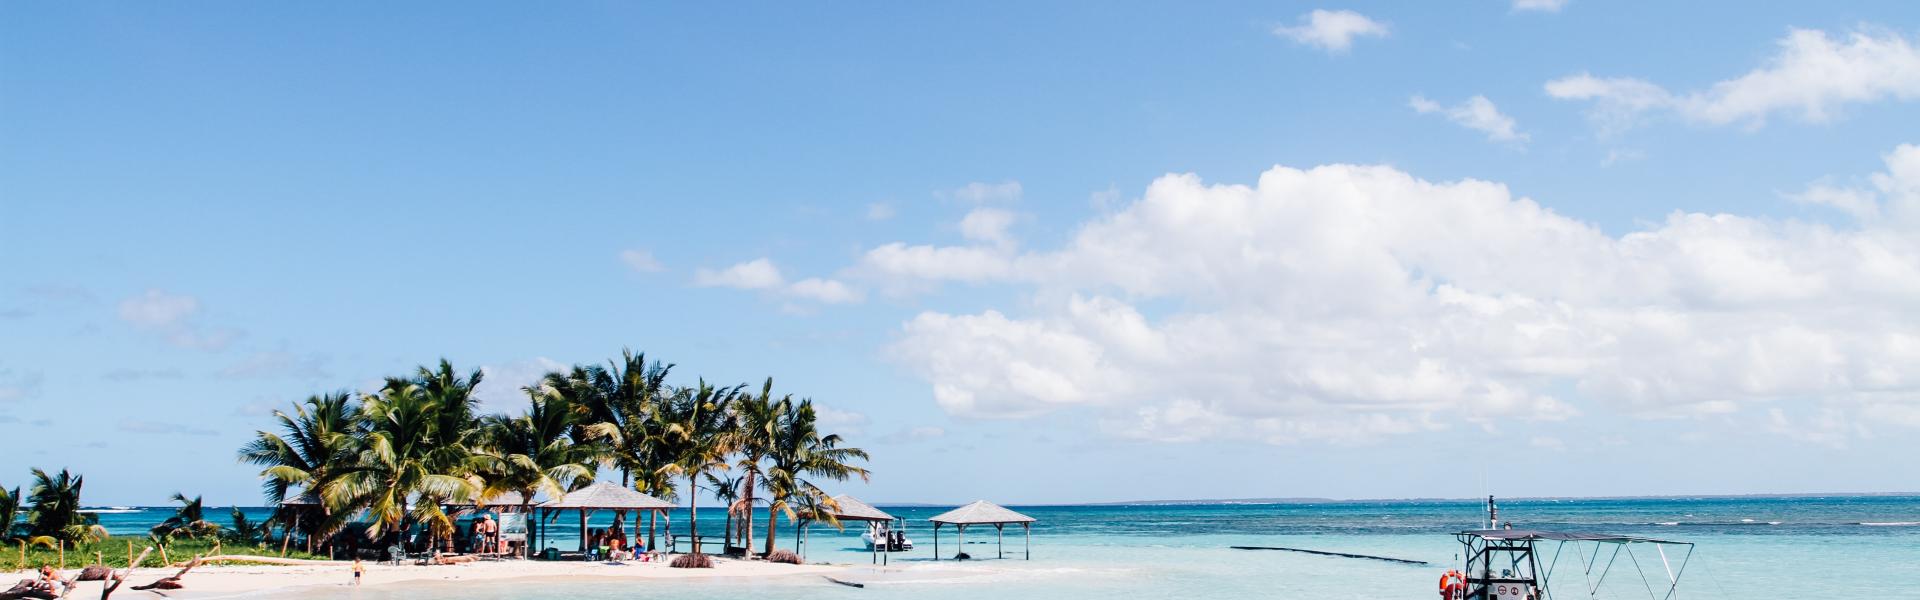 Caribbean Vacation Rentals - Wimdu